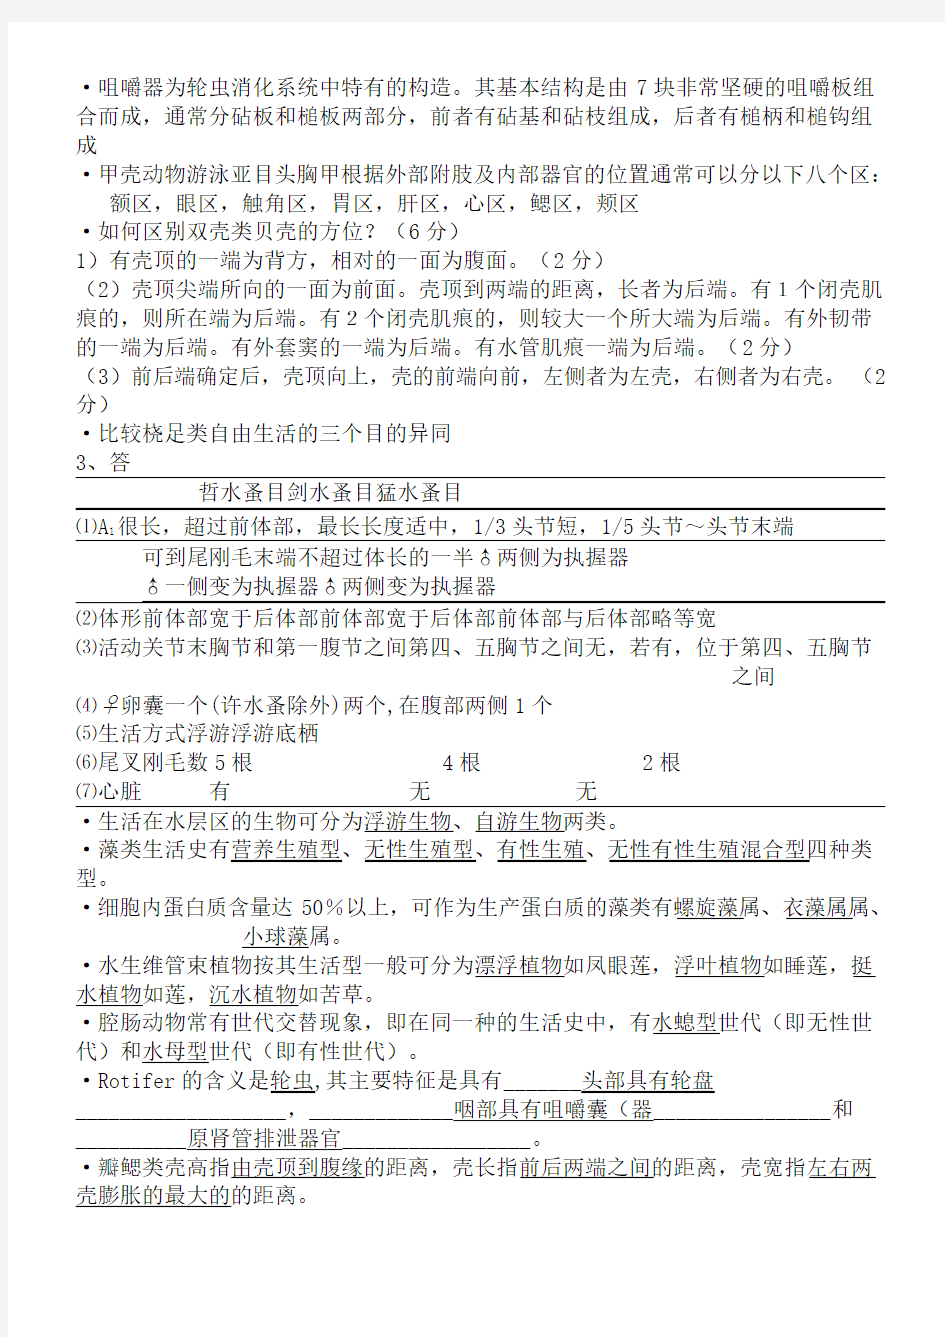 上海海洋大学水生生物学试题库完整版(含整理参考答案)